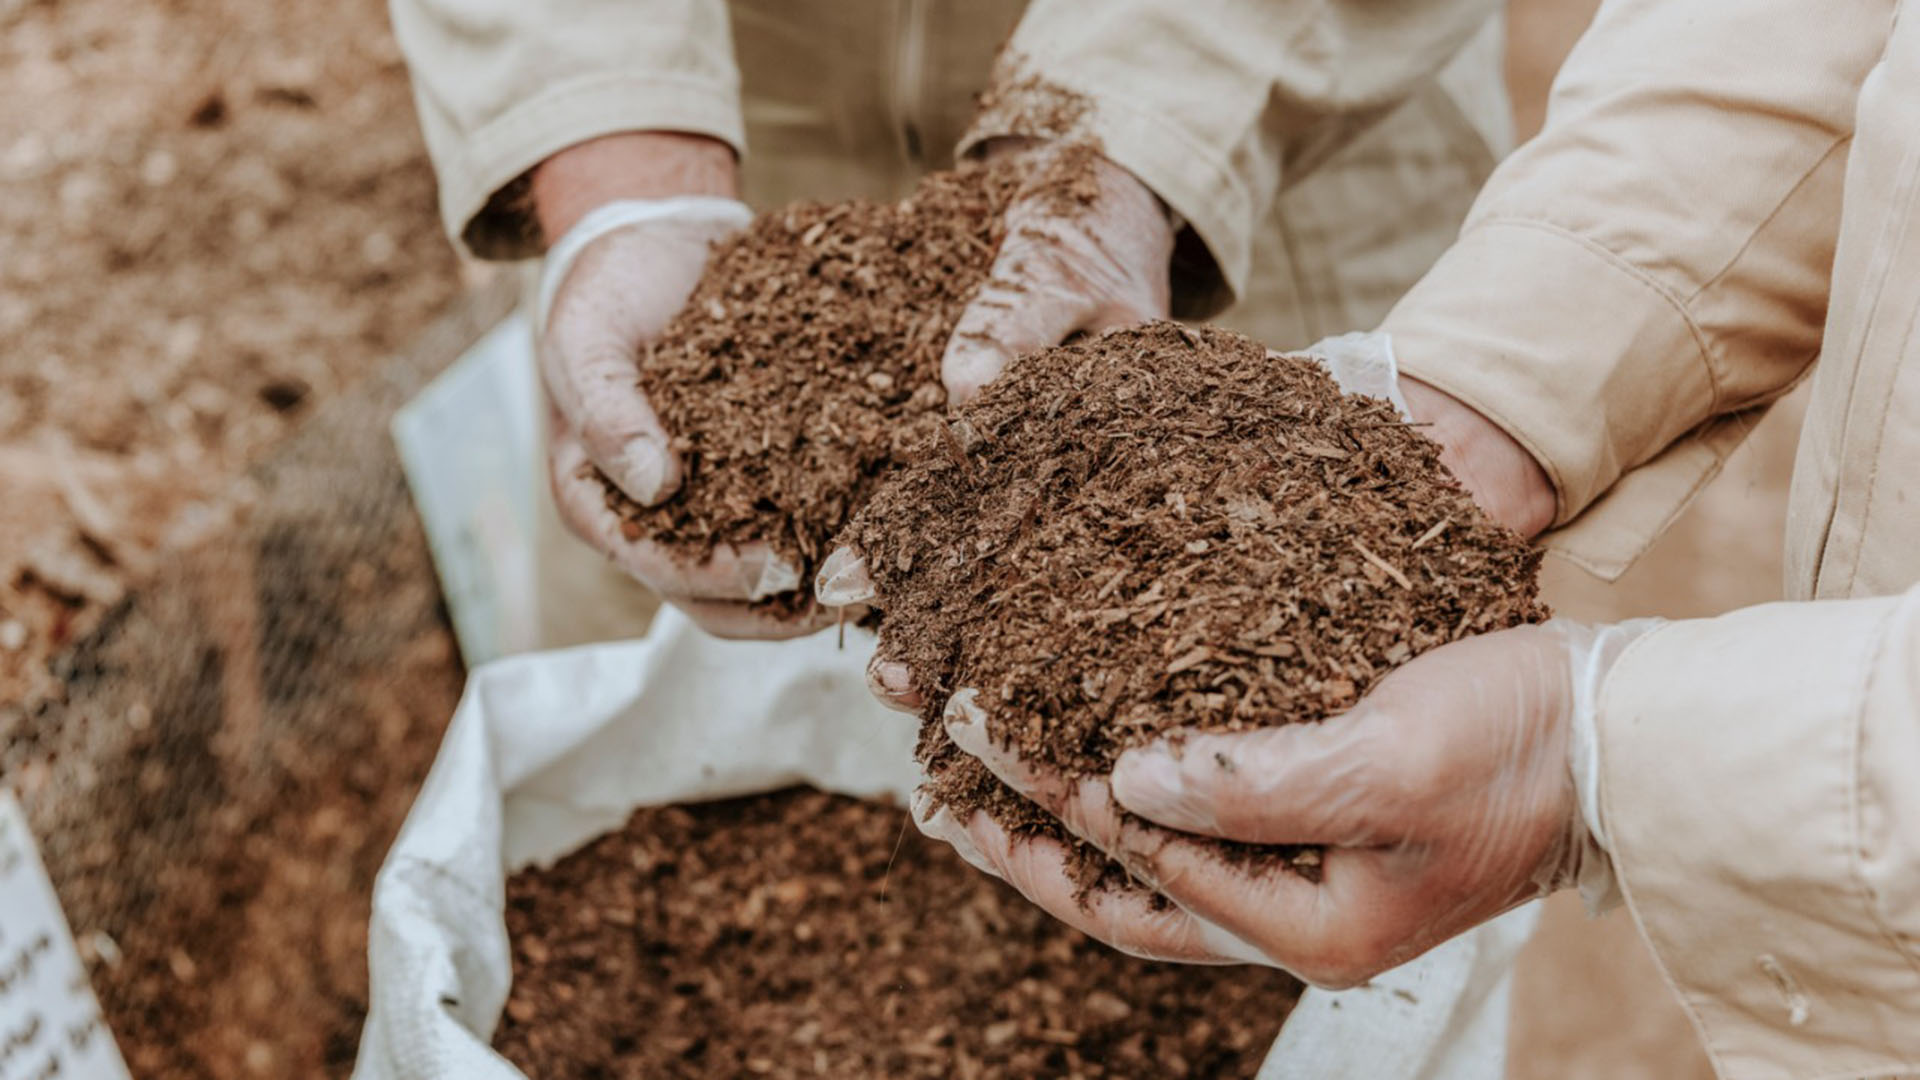 El compostaje es un proceso por el cual se transforma materia biológica en materia orgánica libre de patógenos (Pleia)